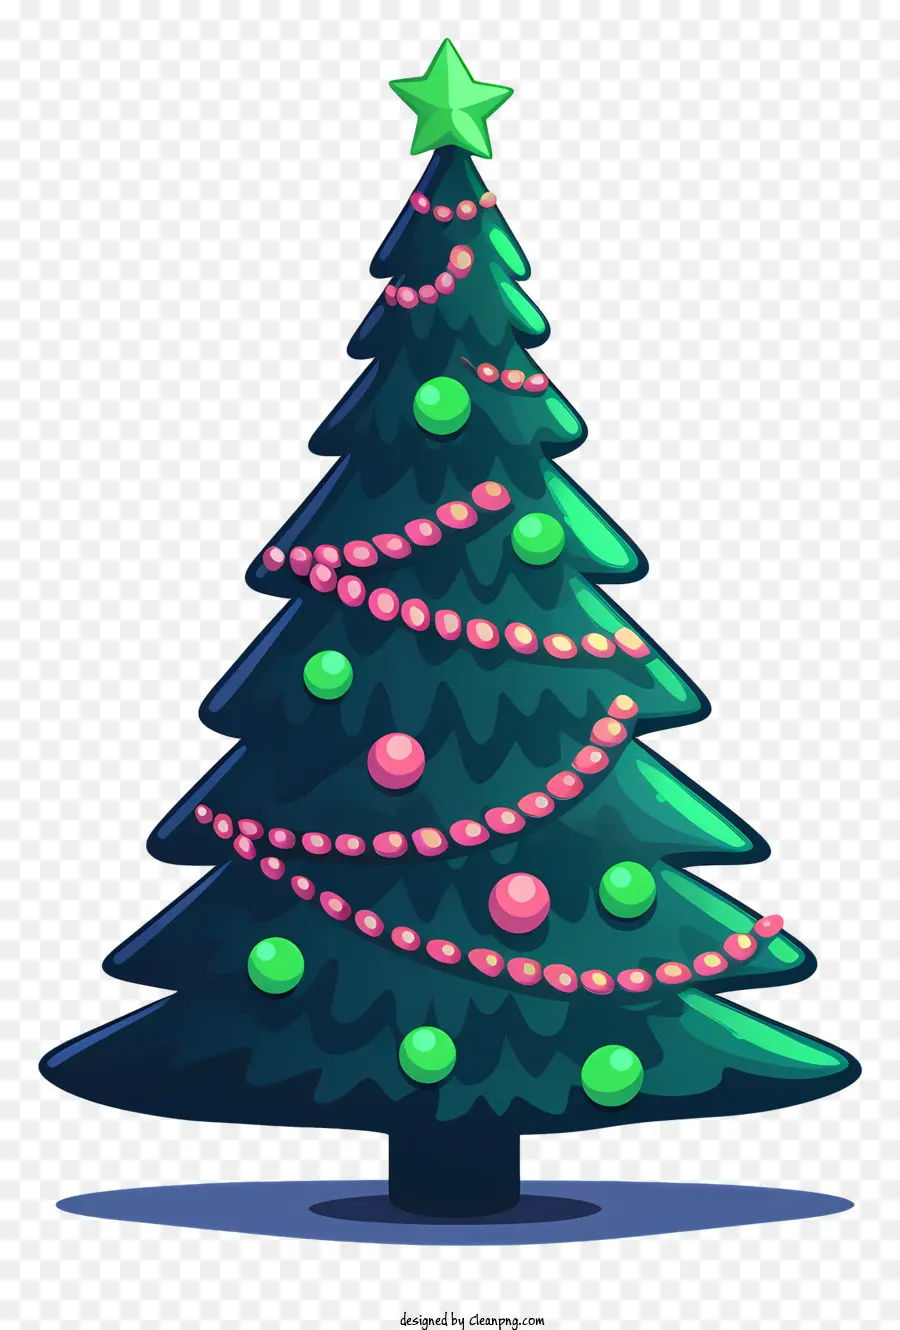 cây giáng sinh - Cây Giáng sinh làm bằng đồ trang trí màu xanh lá cây và đỏ